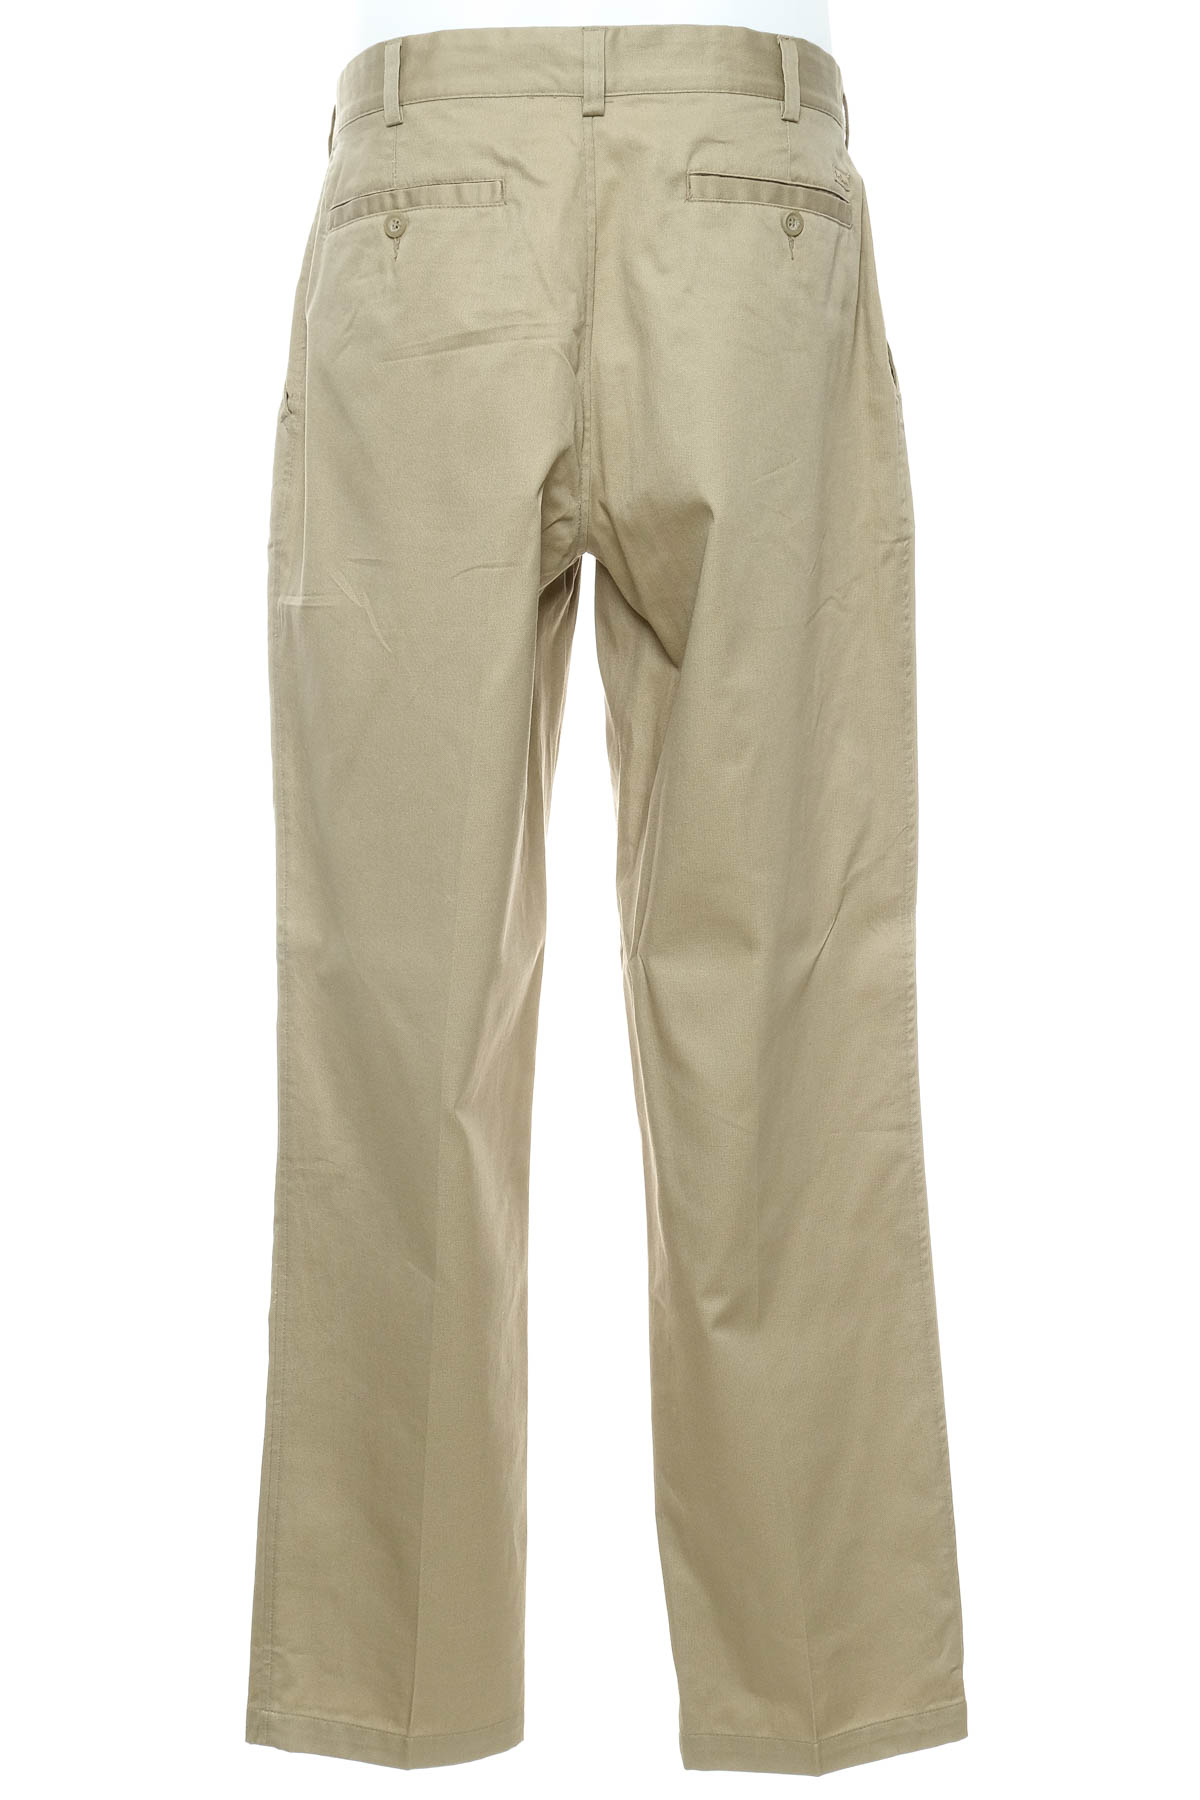 Pantalon pentru bărbați - Port Louis - 1